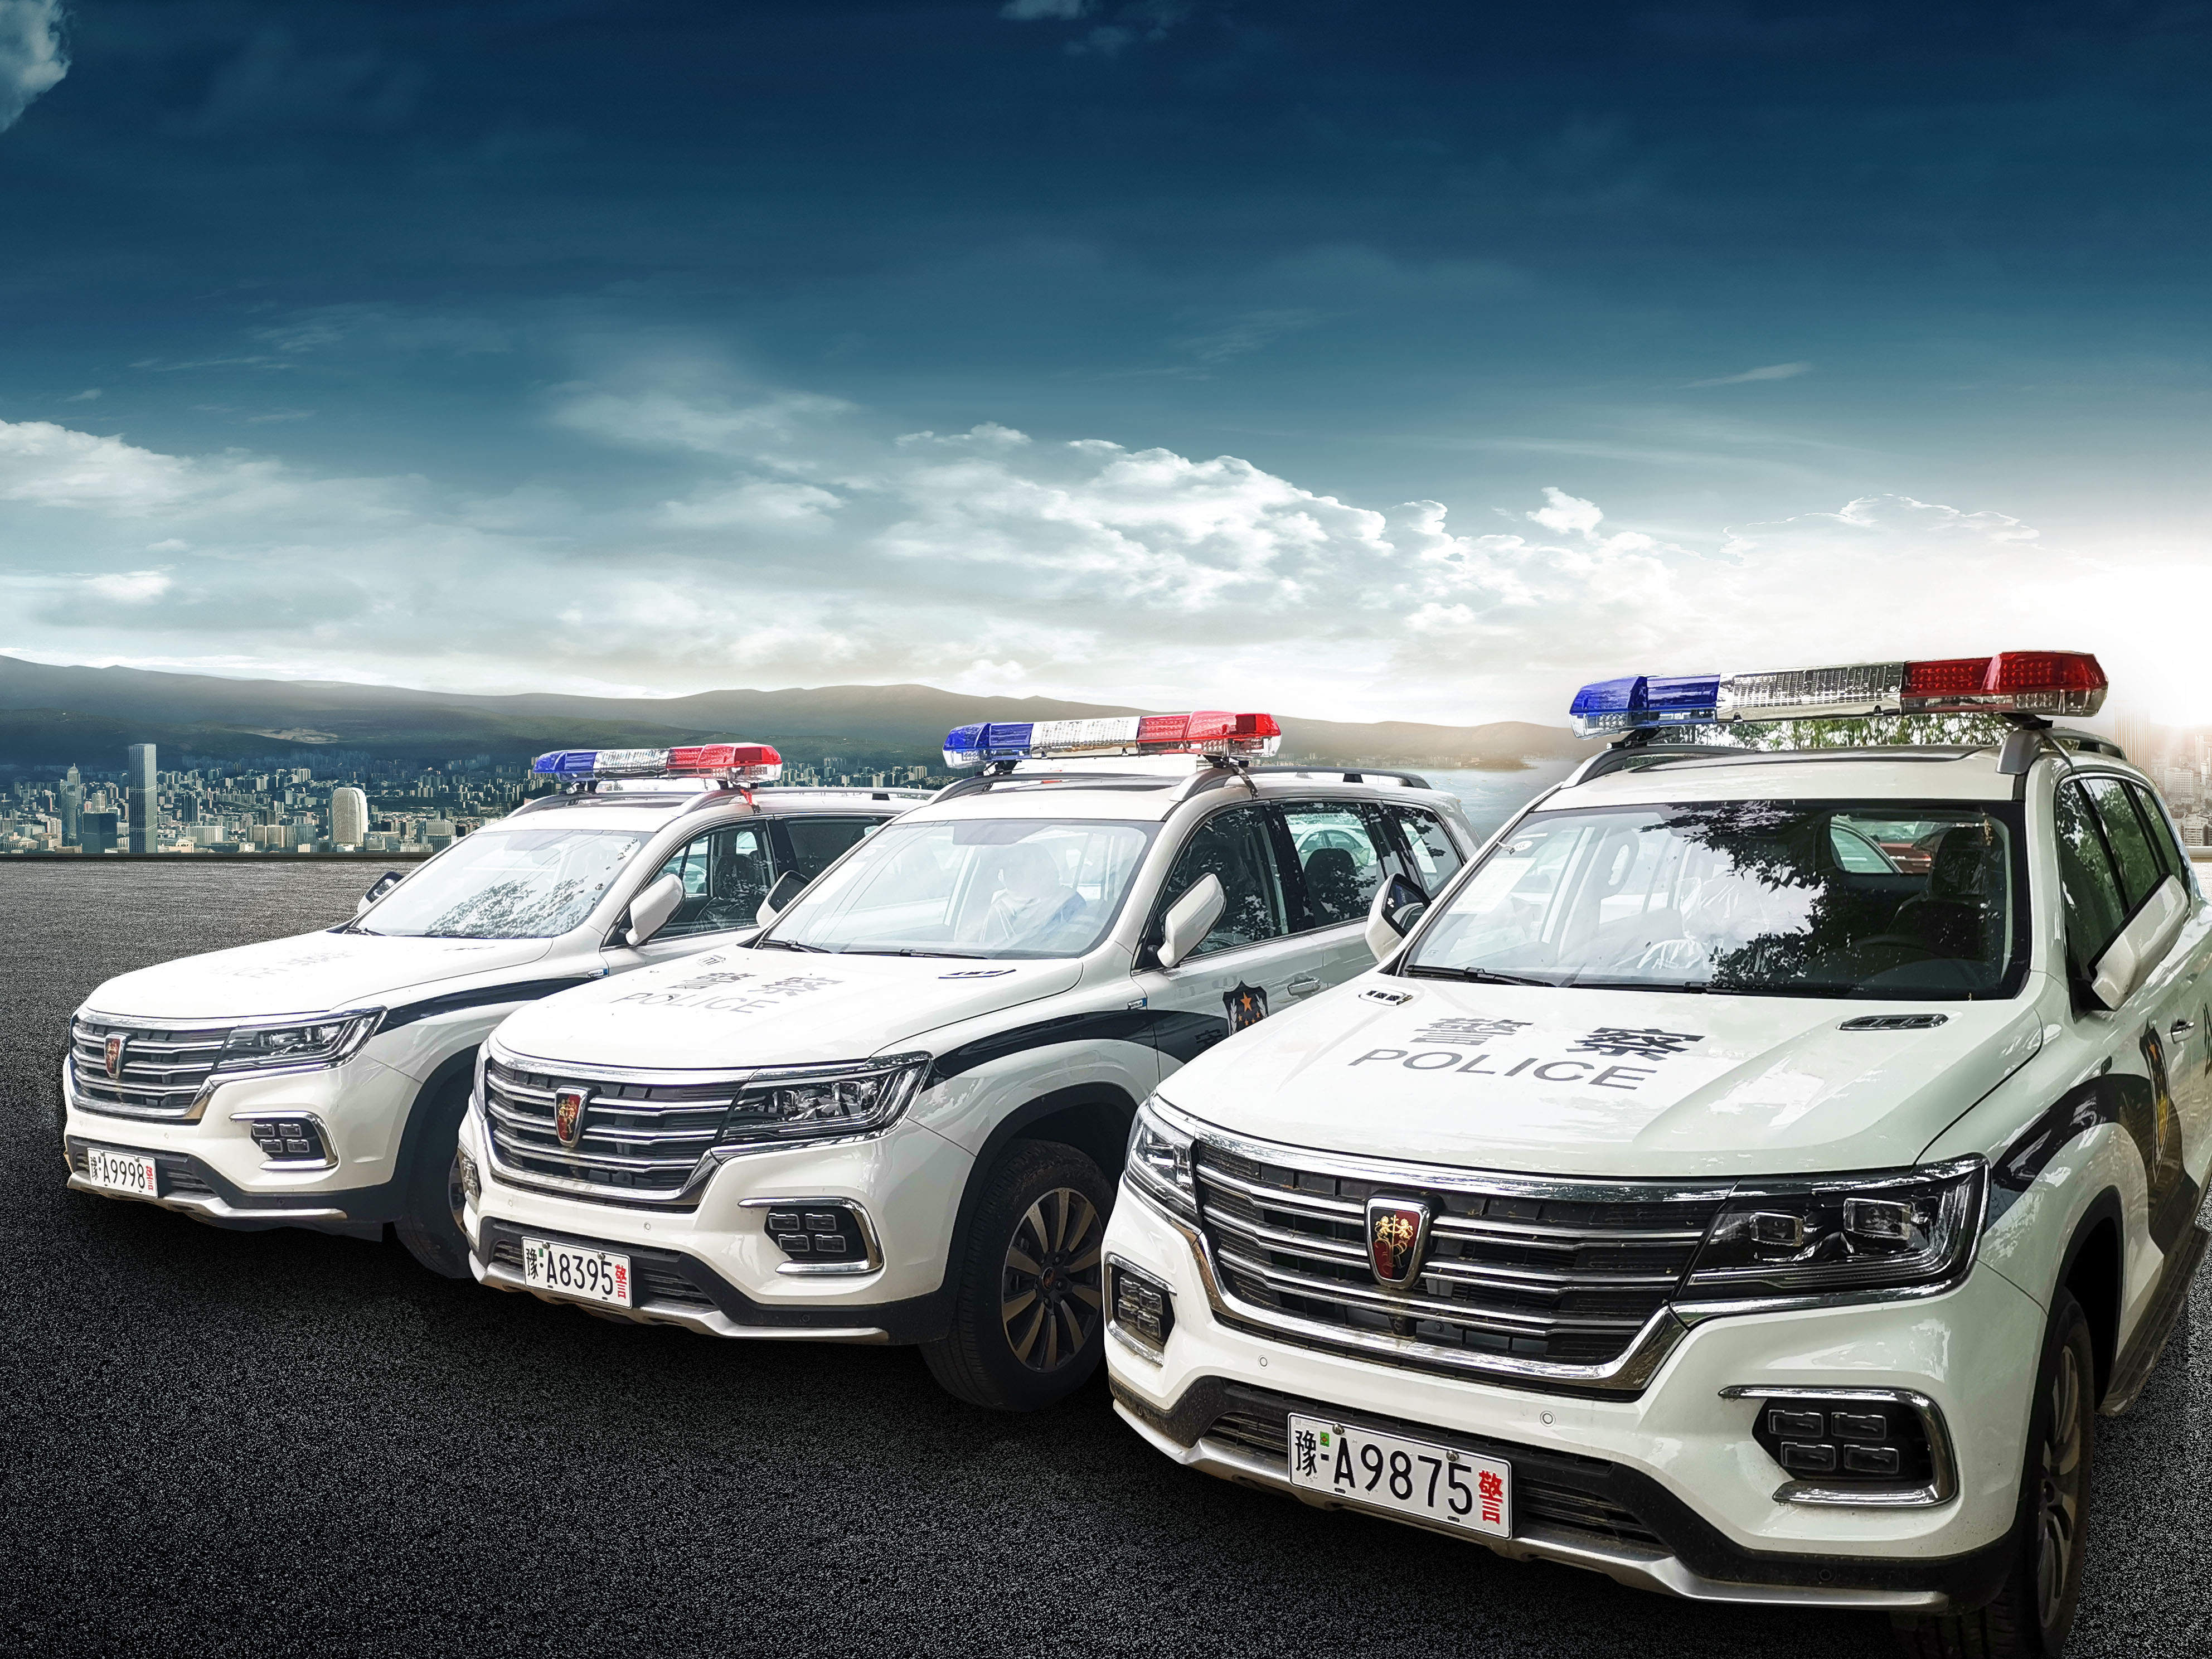 荣威rx5,荣威rx8和名爵emg6共计144辆高品质互联网汽车完成警用车涂装